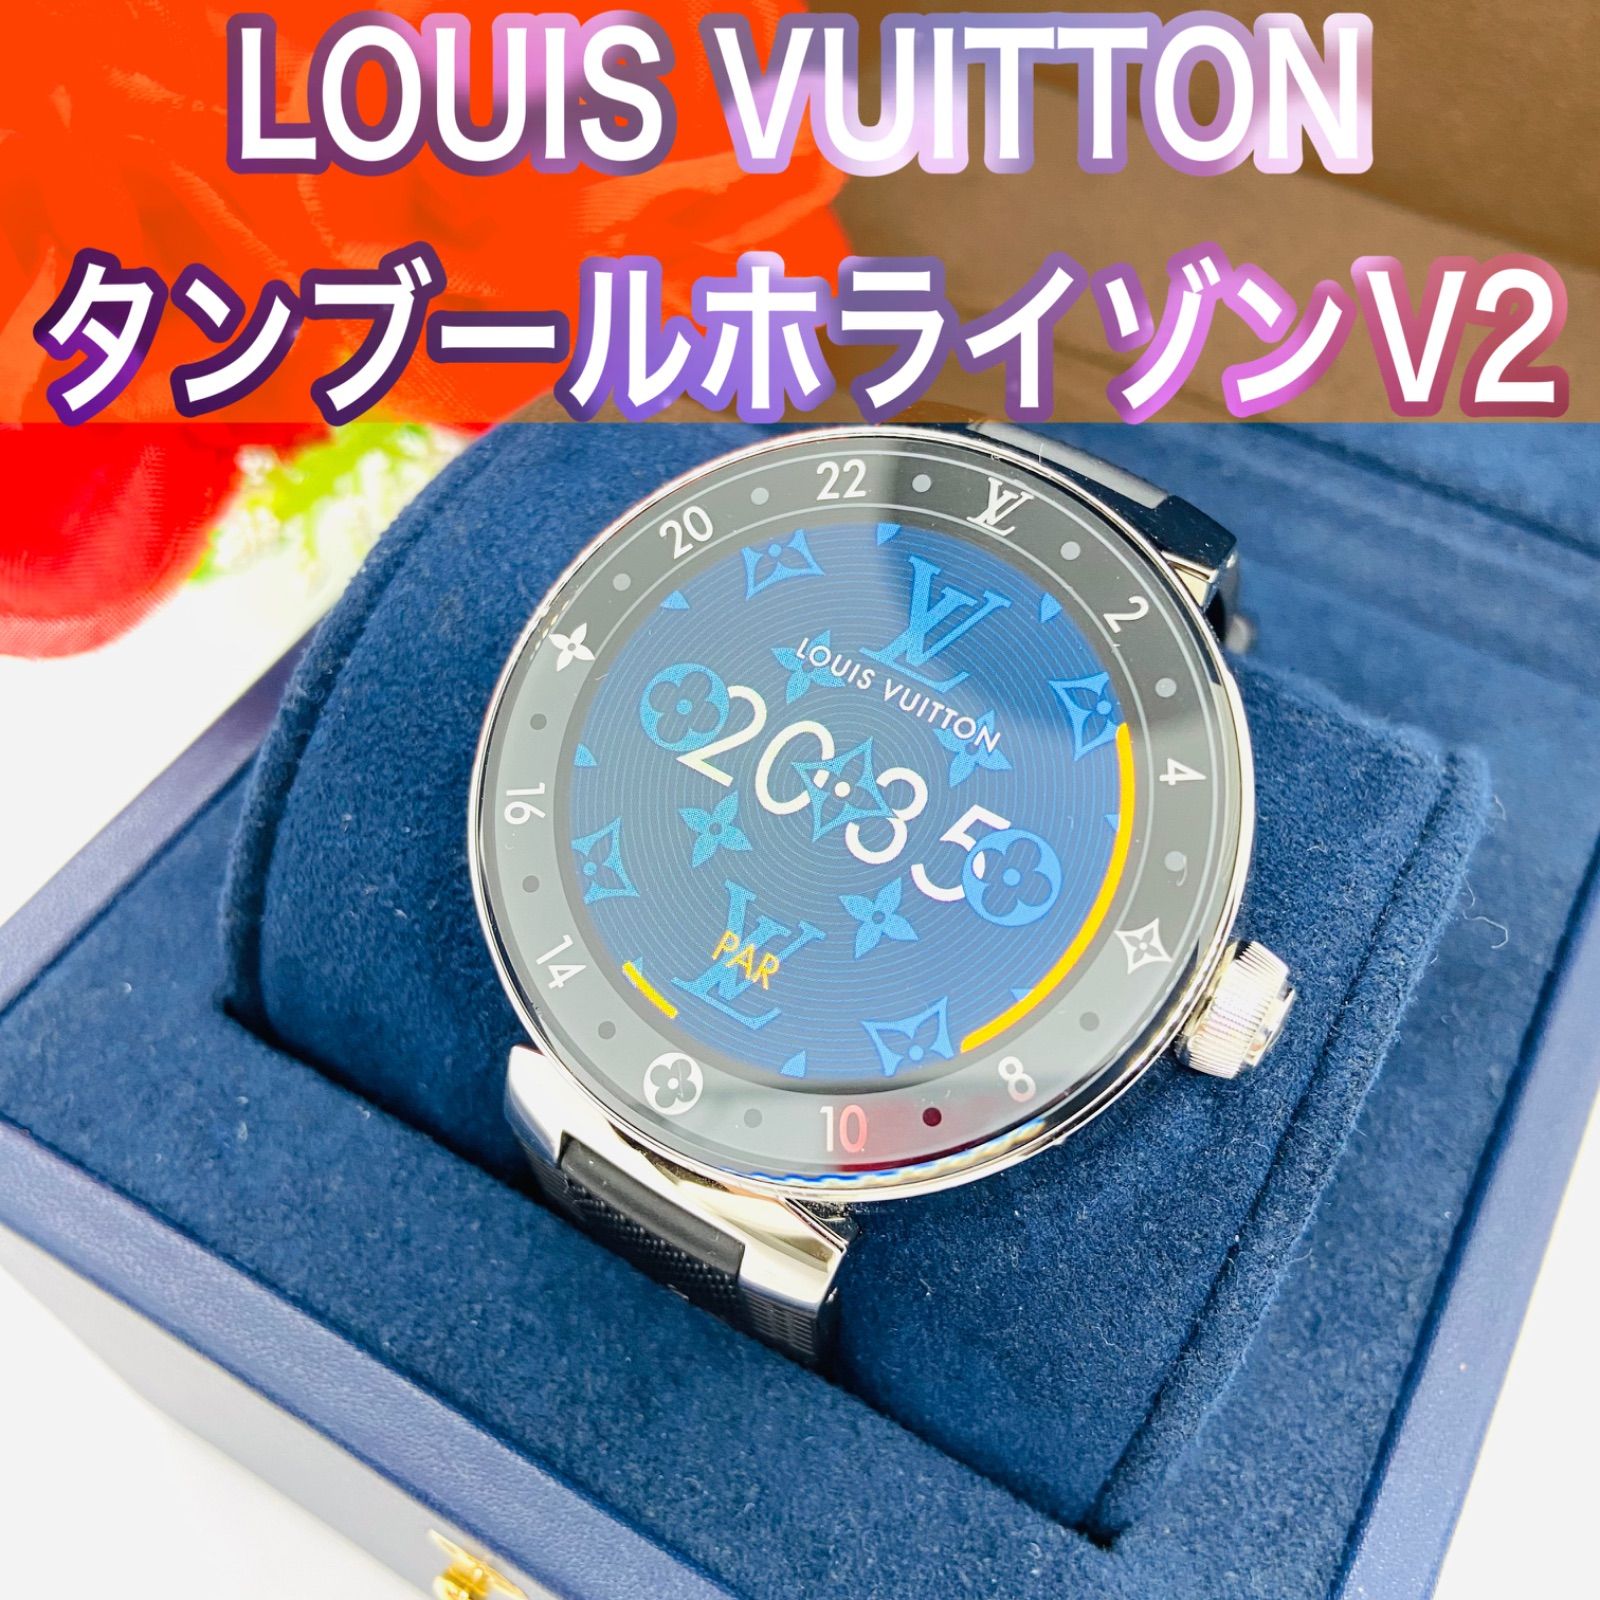 LOUIS VUITTON ヴィトン ホライゾン V2 腕時計 スマートウォッチ